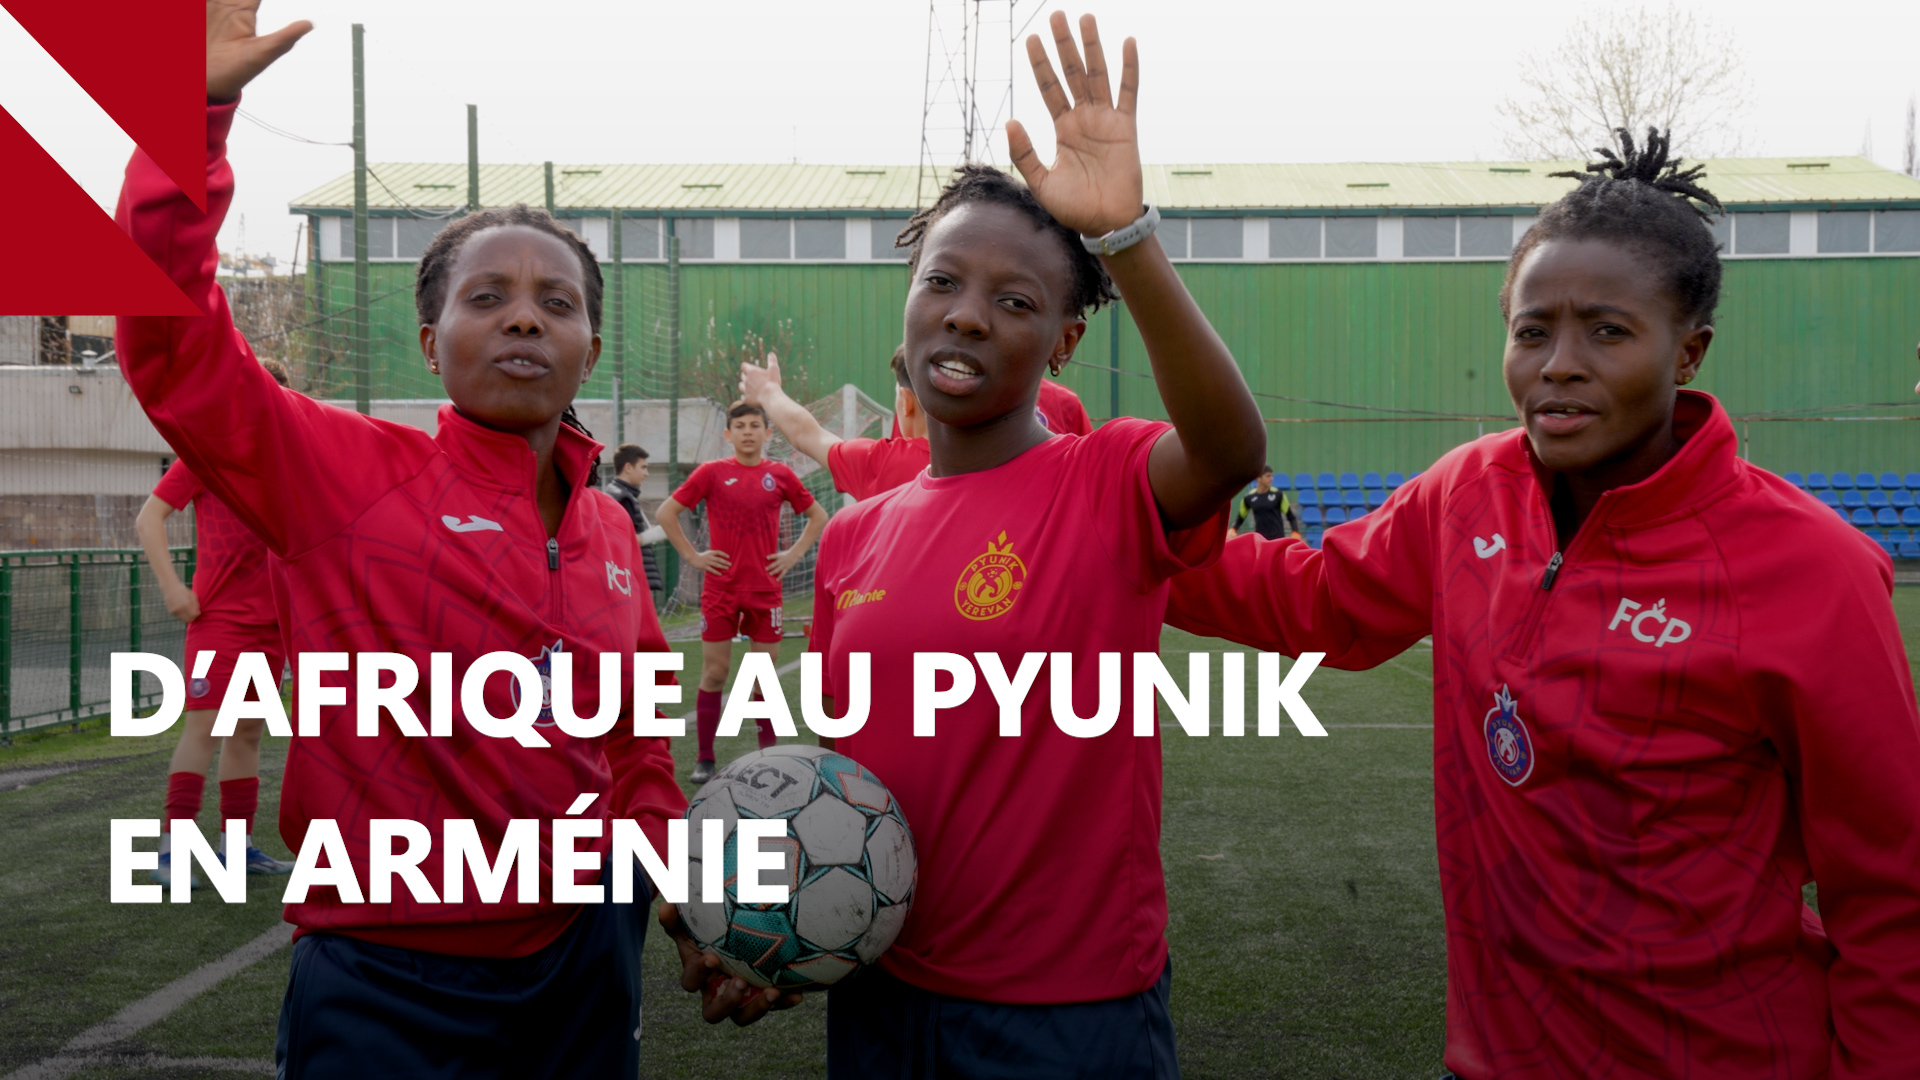 Trois joueuses du Ghana et du Congo dans l’équipe de football féminine du Pyunik